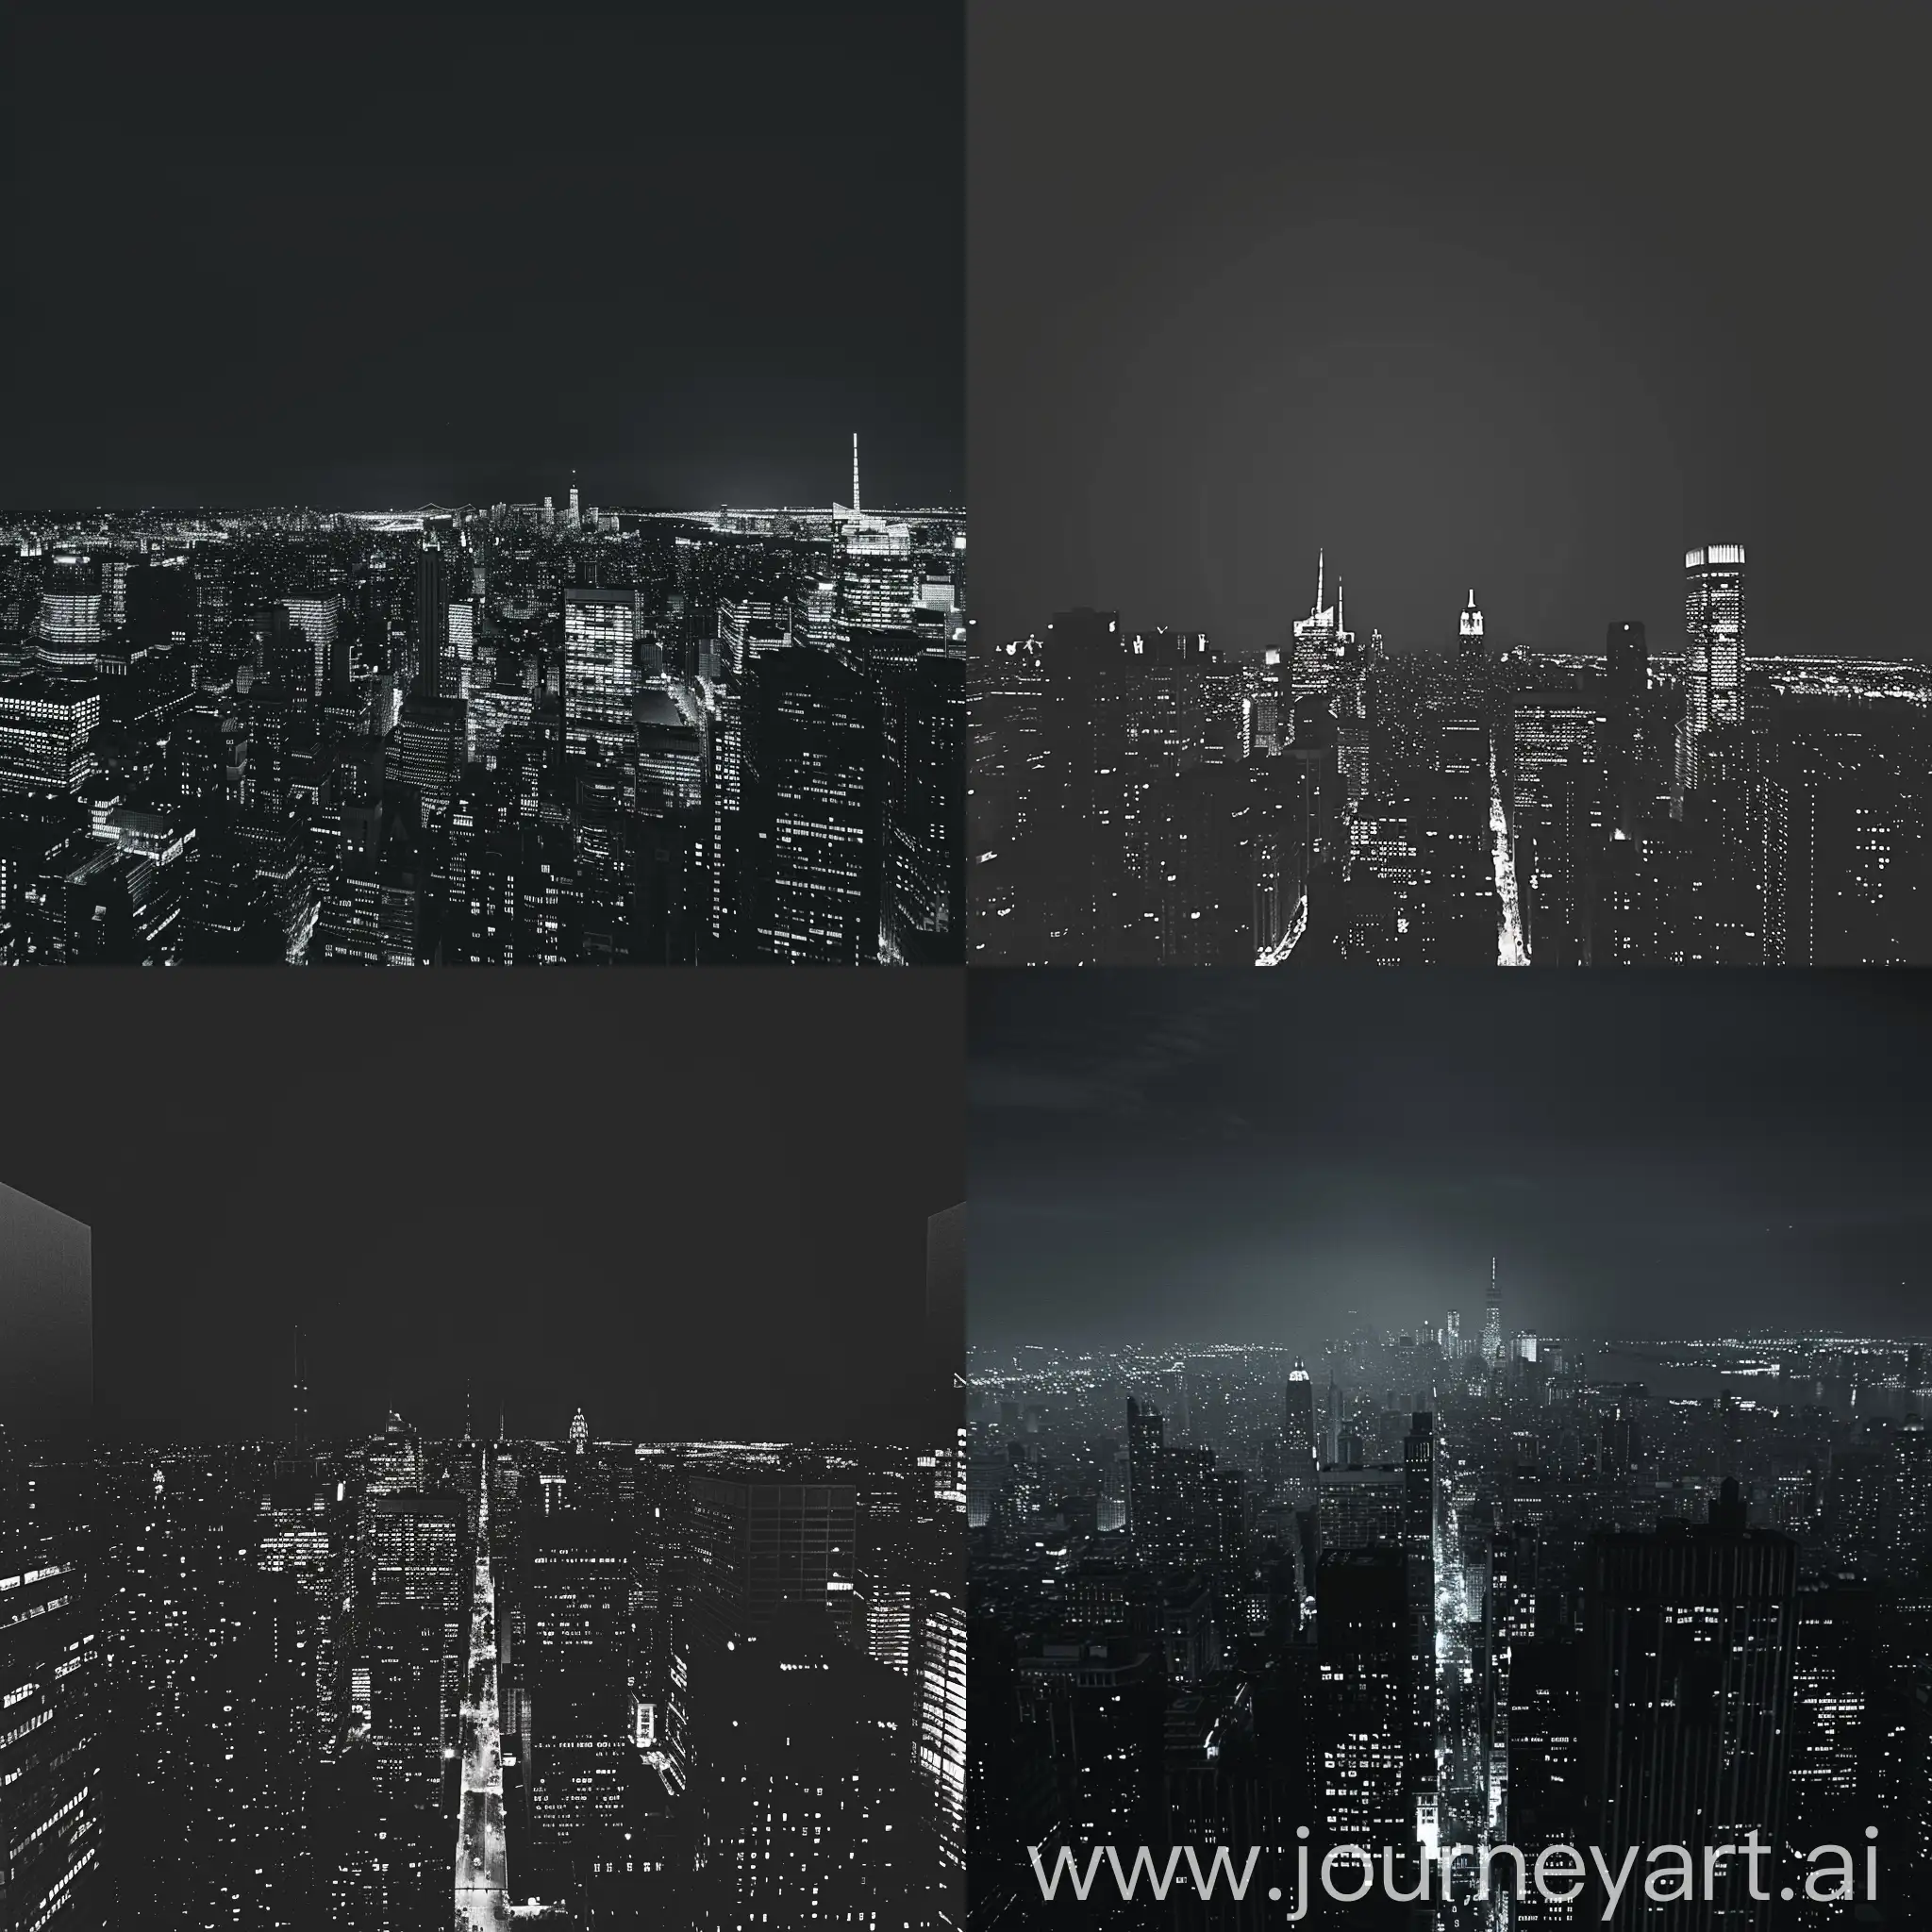 یک عکس از نمای یک شهر در شب و سیاه سفید و تیره با ساختمان های بلند و داشتن فضای خالی برای نوشتن متن
